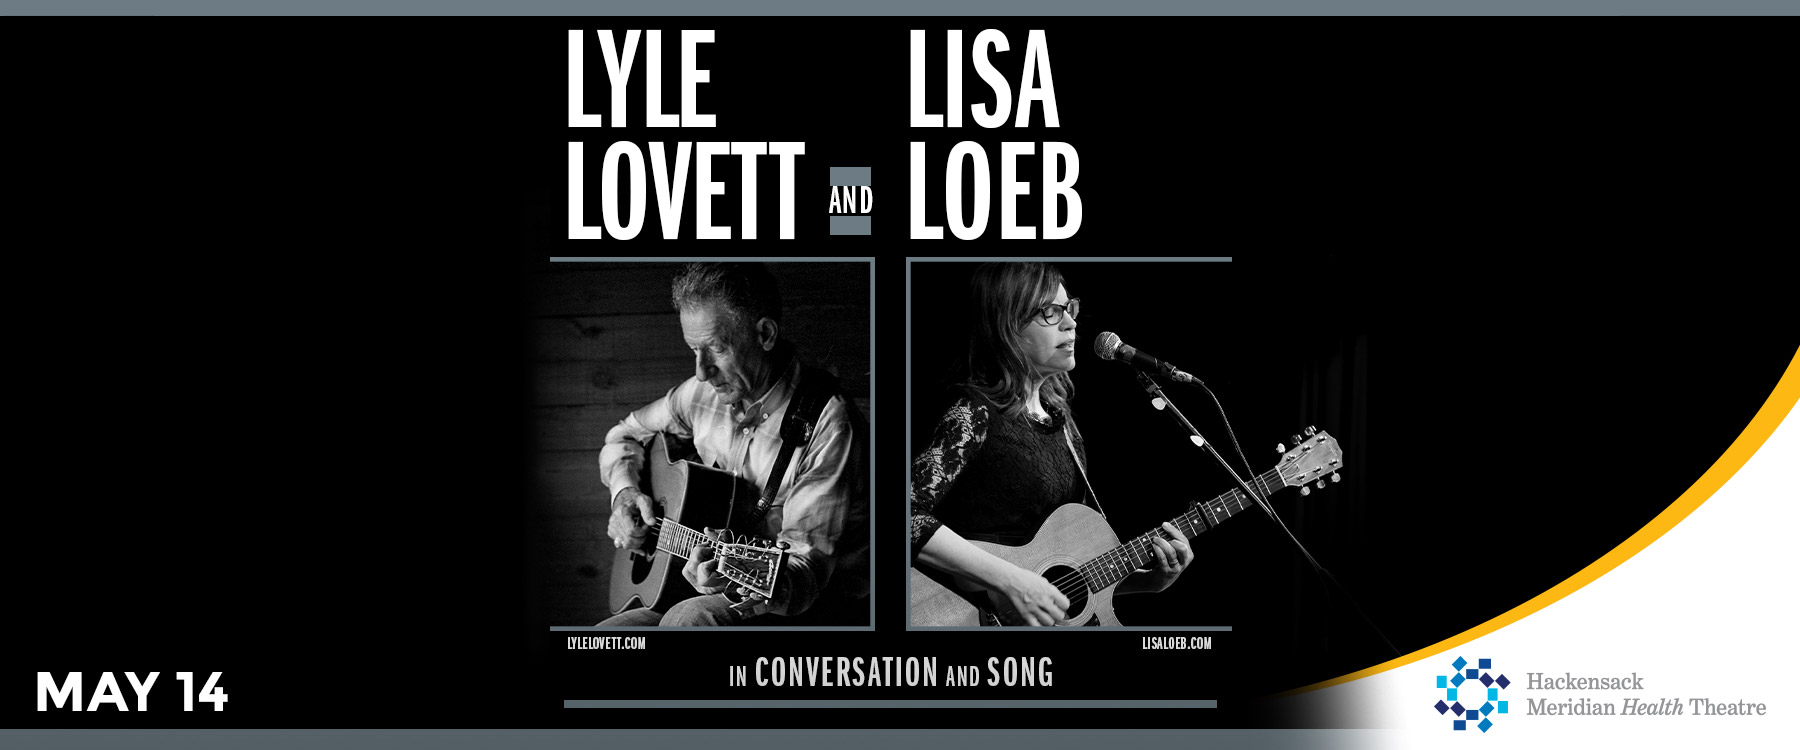 Lyle Lovett and Lisa Loeb